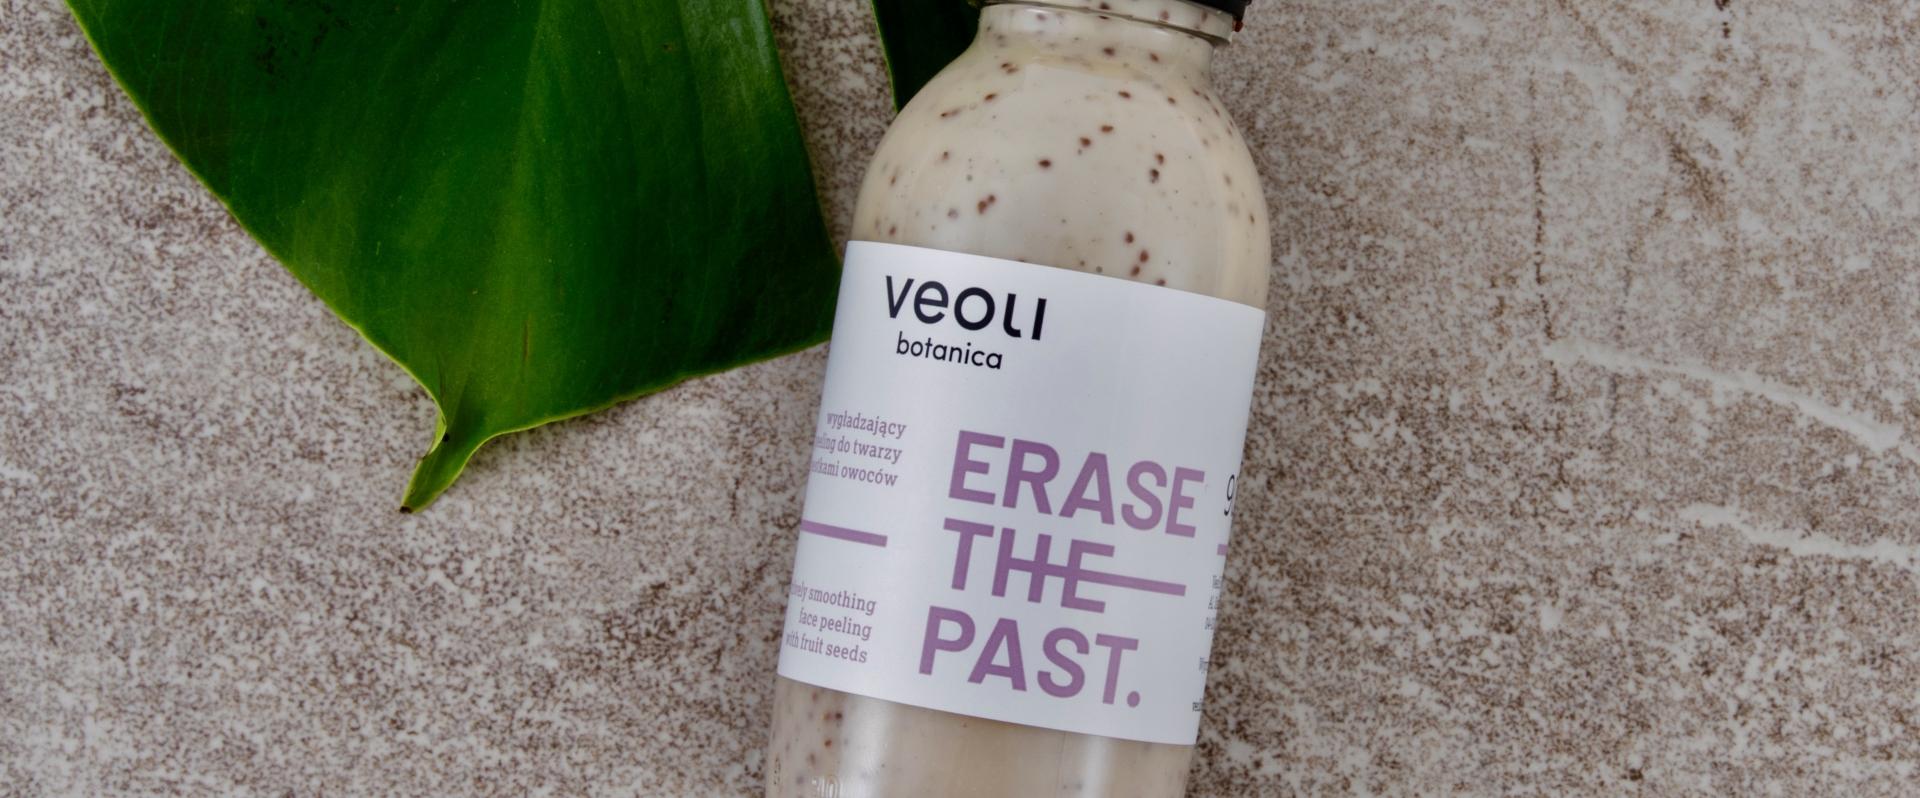 Veoli Botanica - co wyróżnia tę markę kosmetyczną?